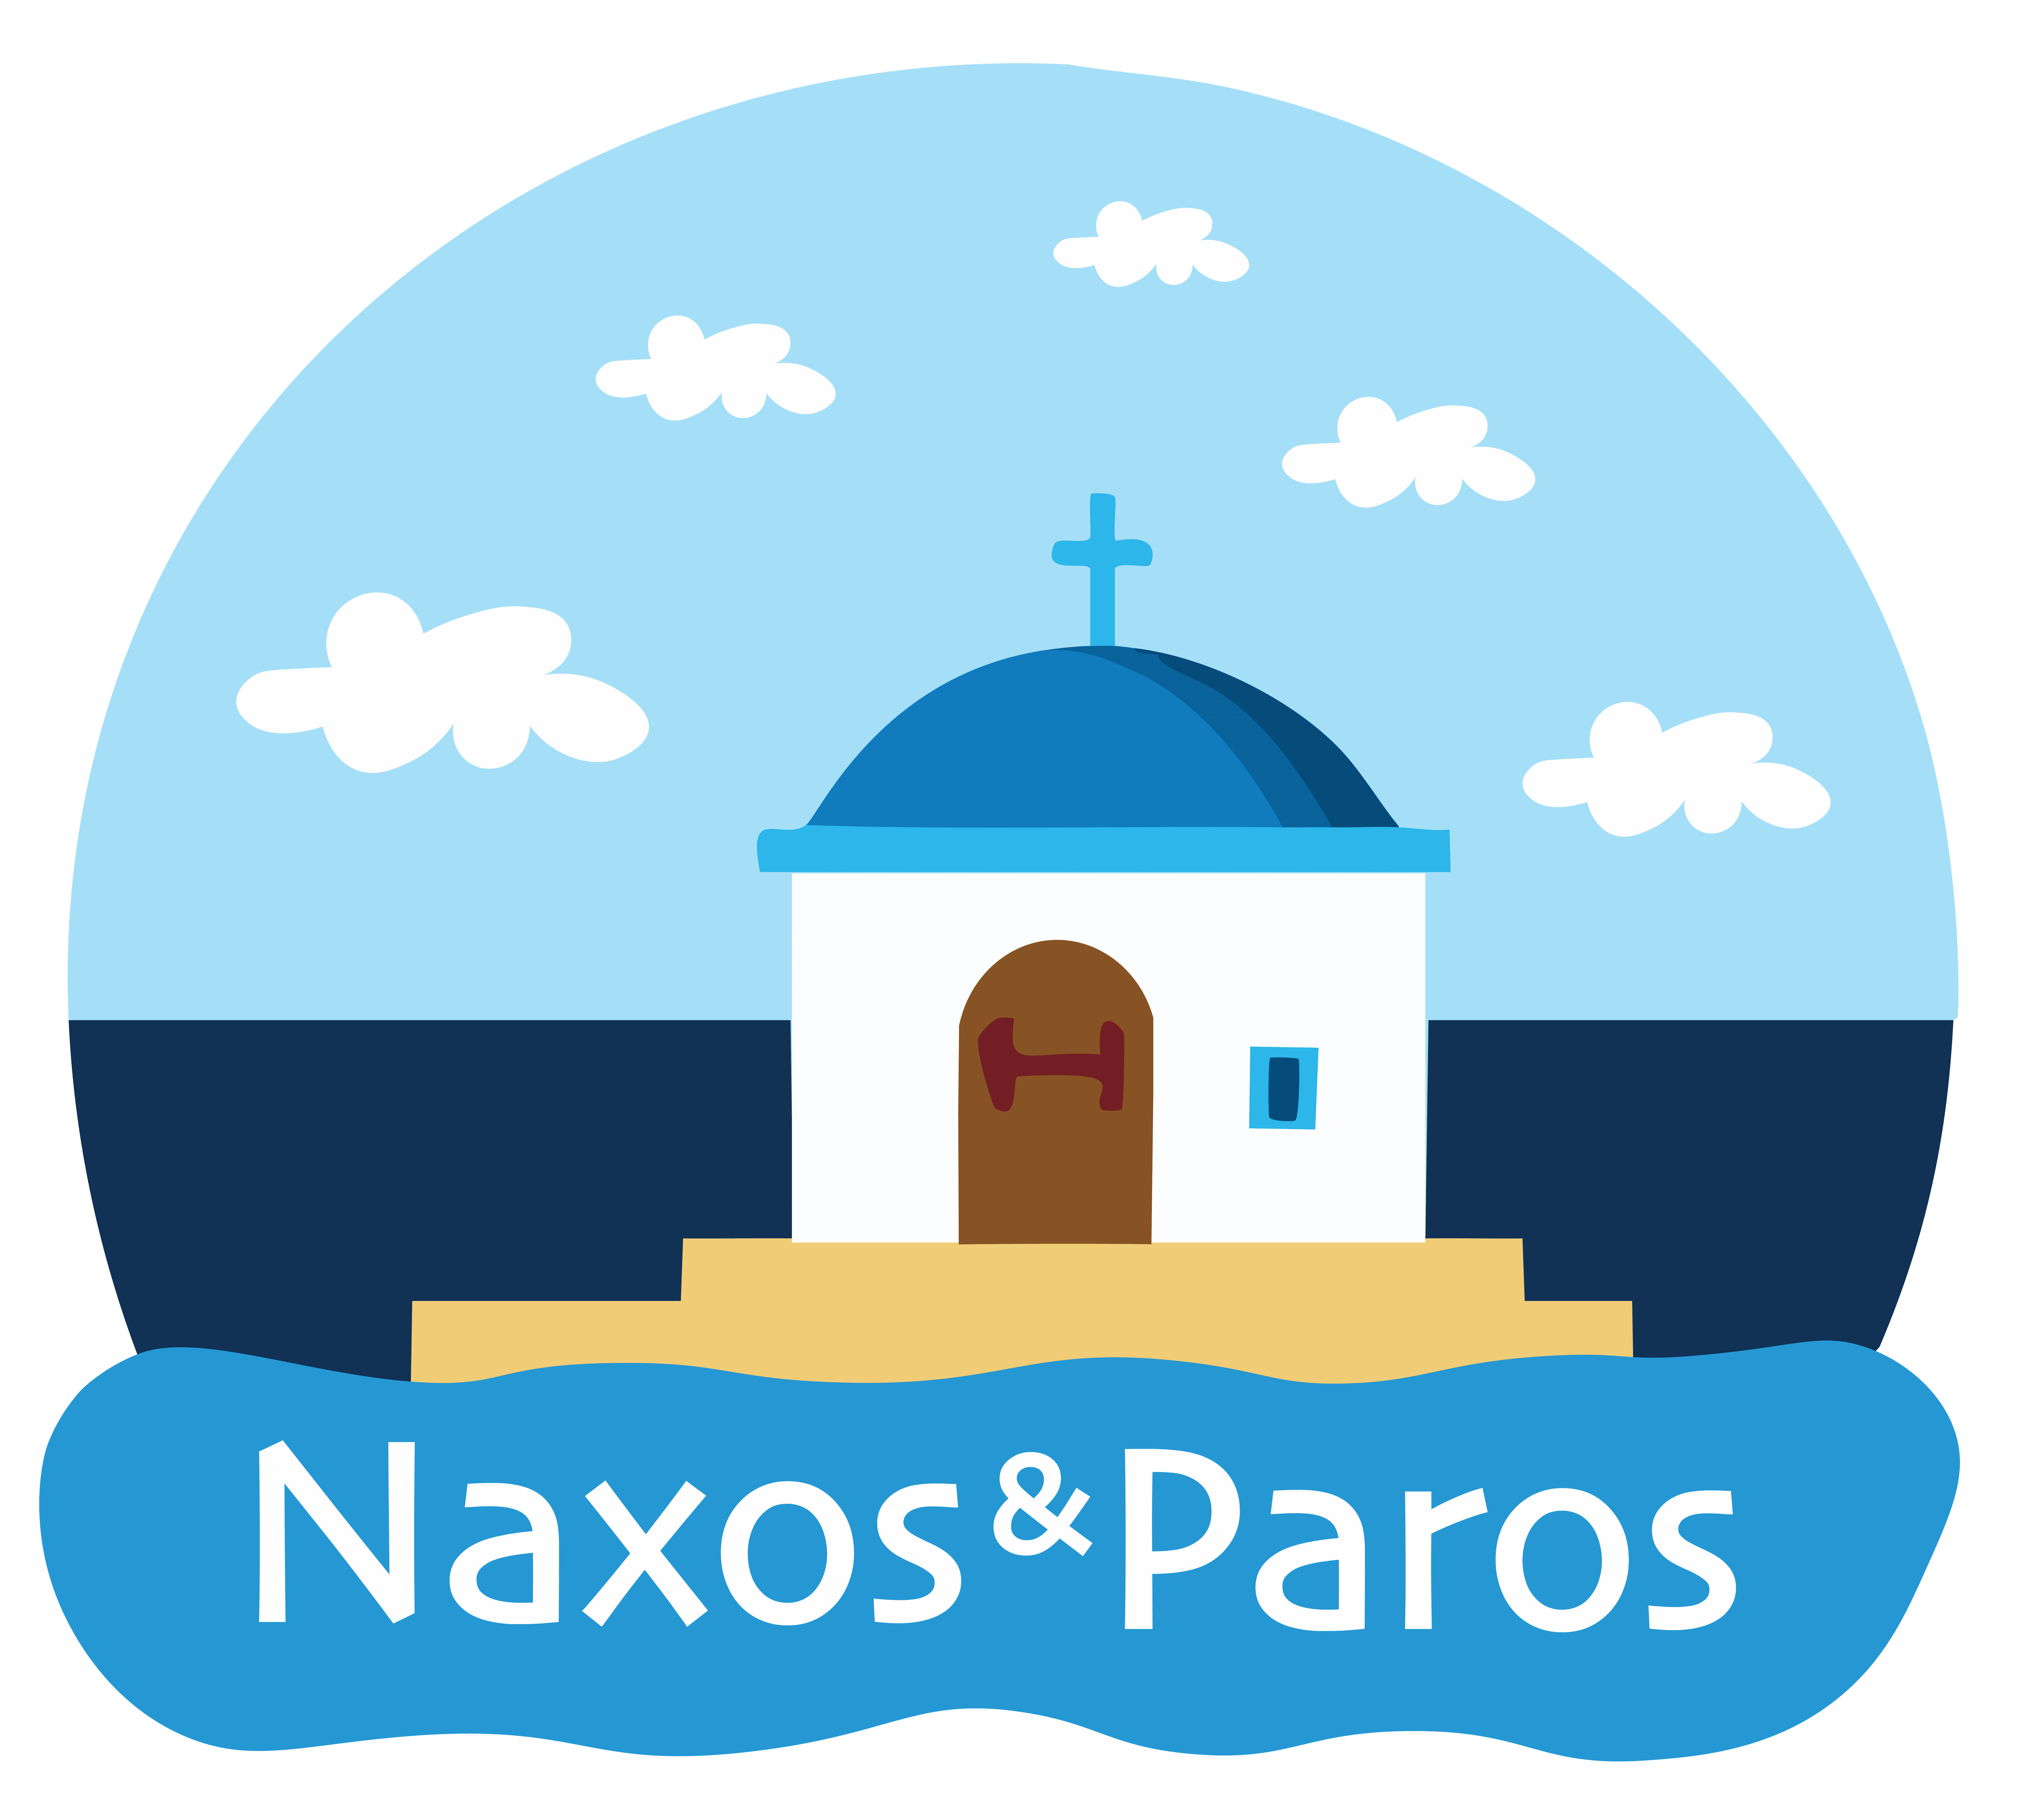 Explore Naxos & Paros